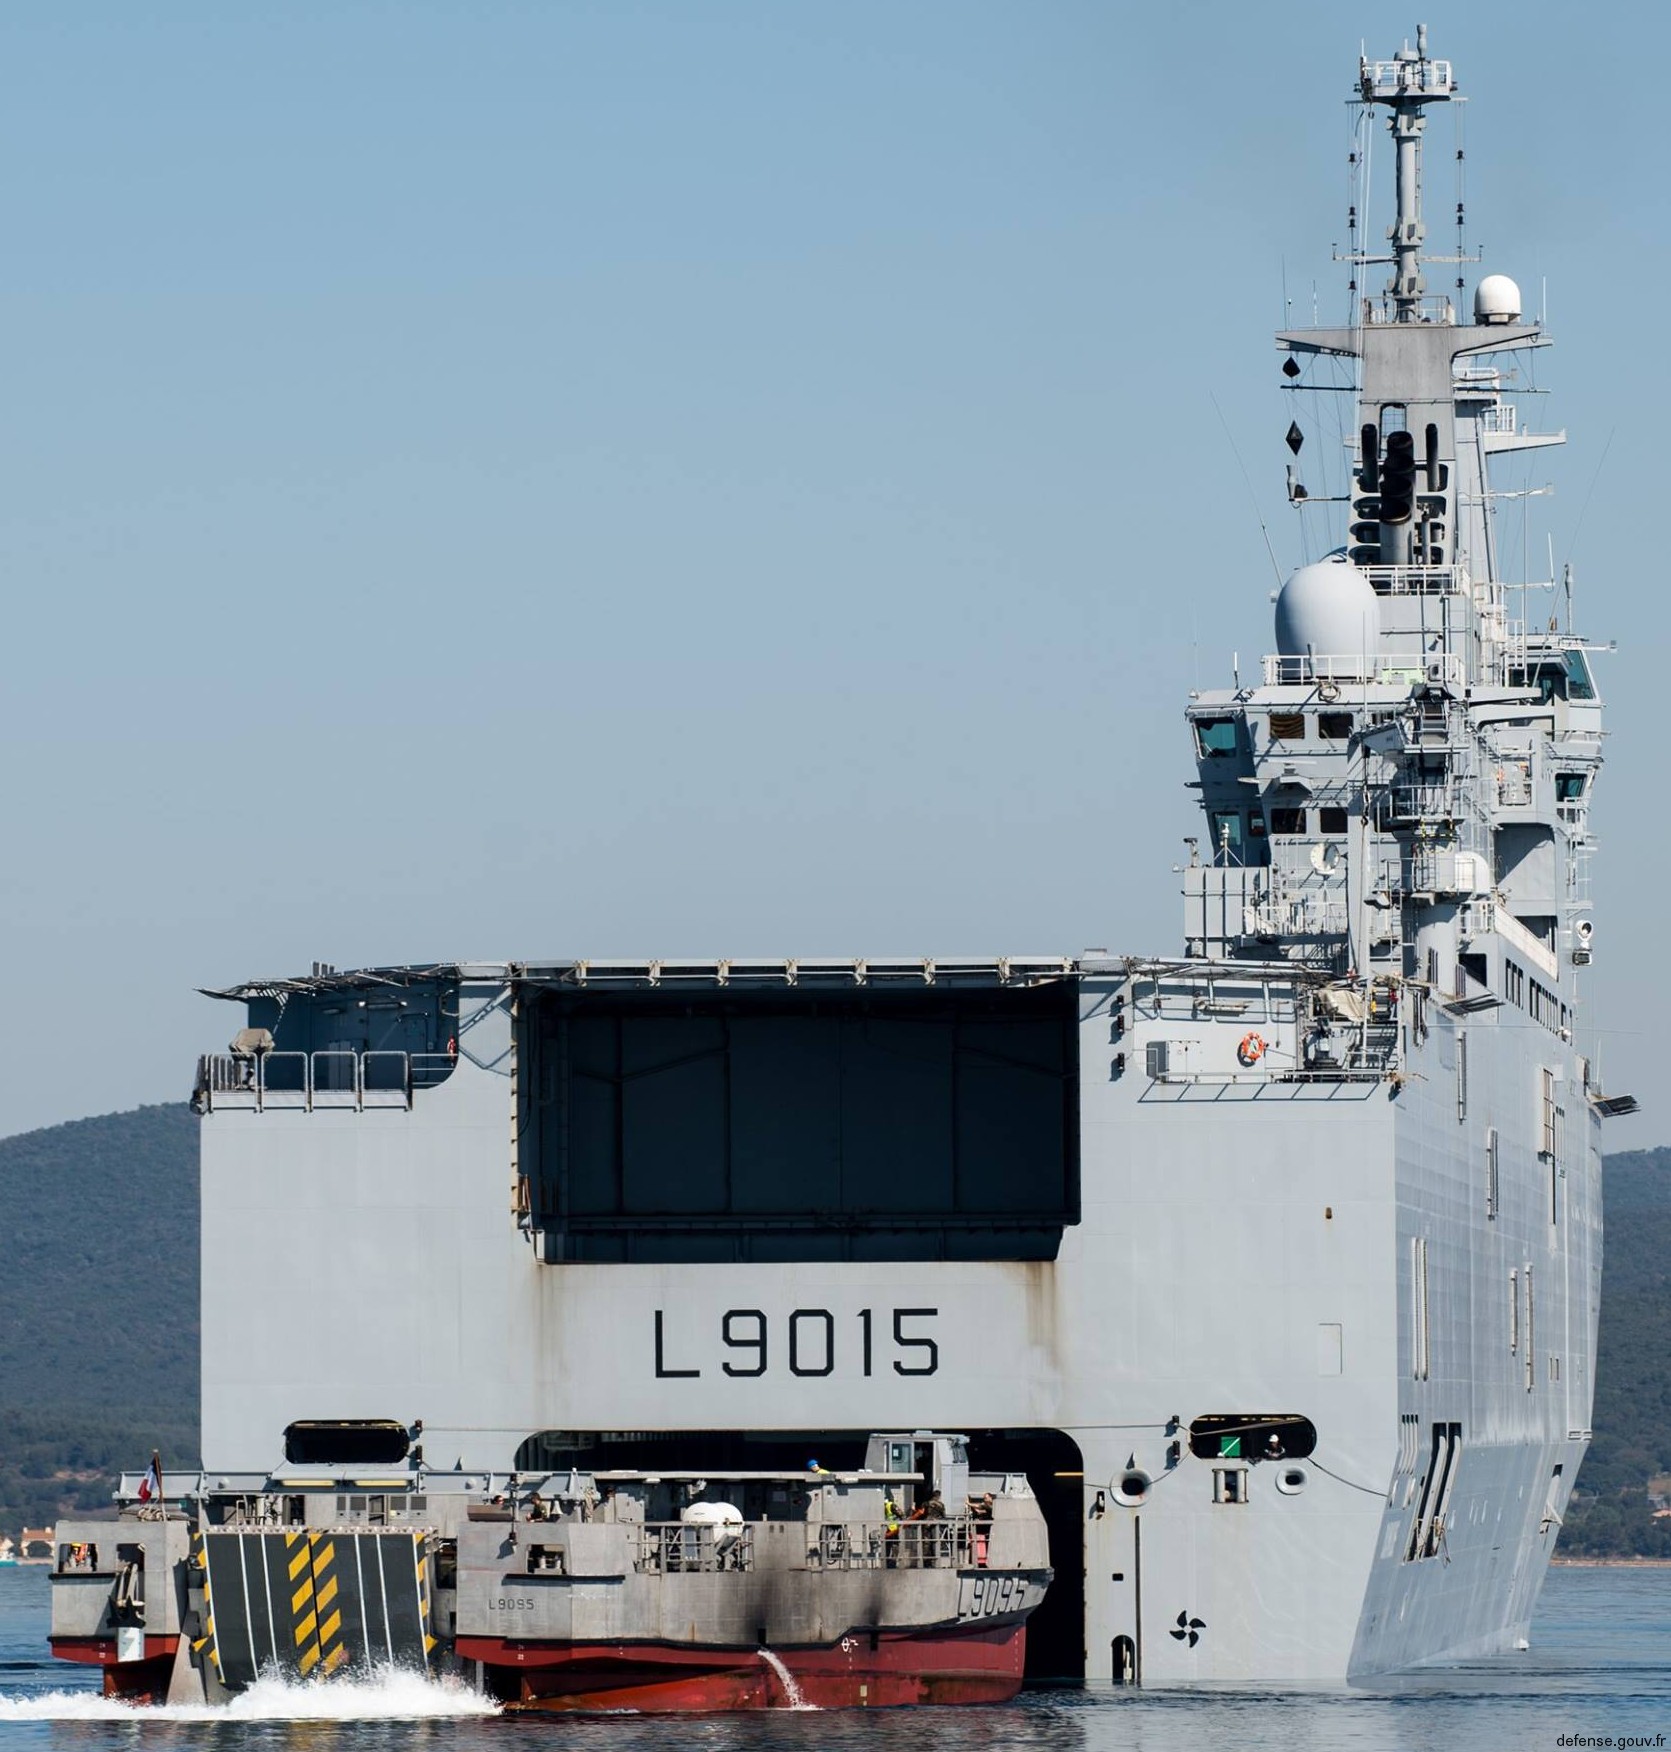 l-9015 fs dixmude mistral class amphibious assault command ship bpc french navy marine nationale 36 l-cat landing catamaran engin de débarquement amphibie rapide eda-r